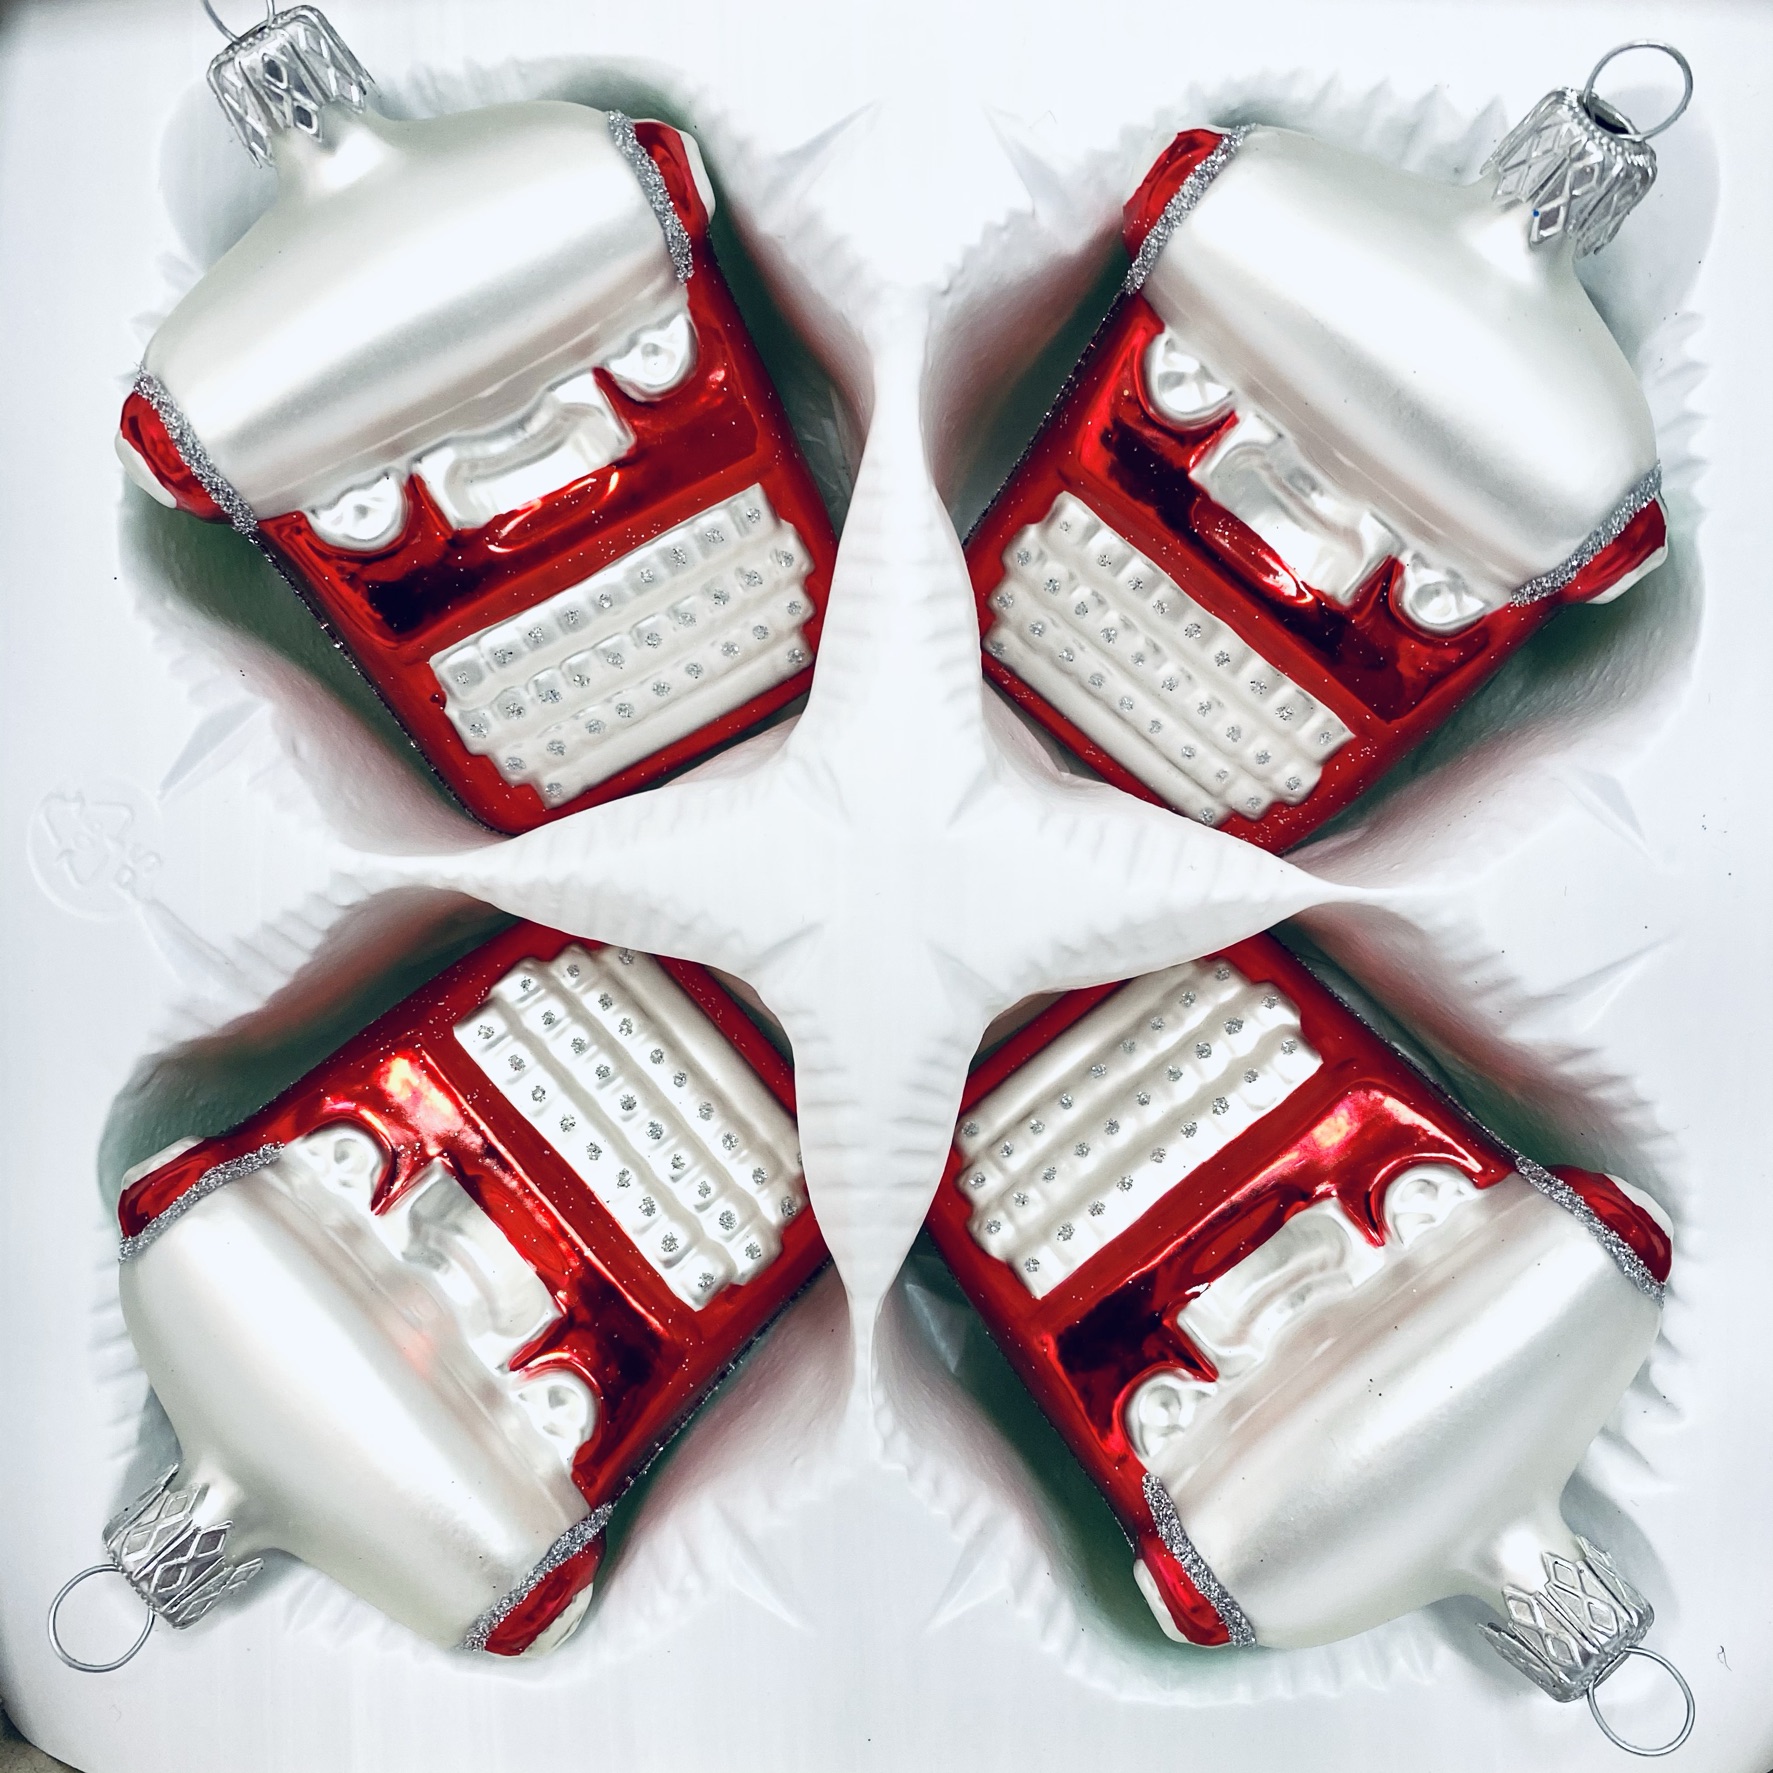 IRISA Skleněná ozdoba Červený psací stroj, sada 4 ks Balení: 4ks, Barva: červená, Velikost: 8 cm